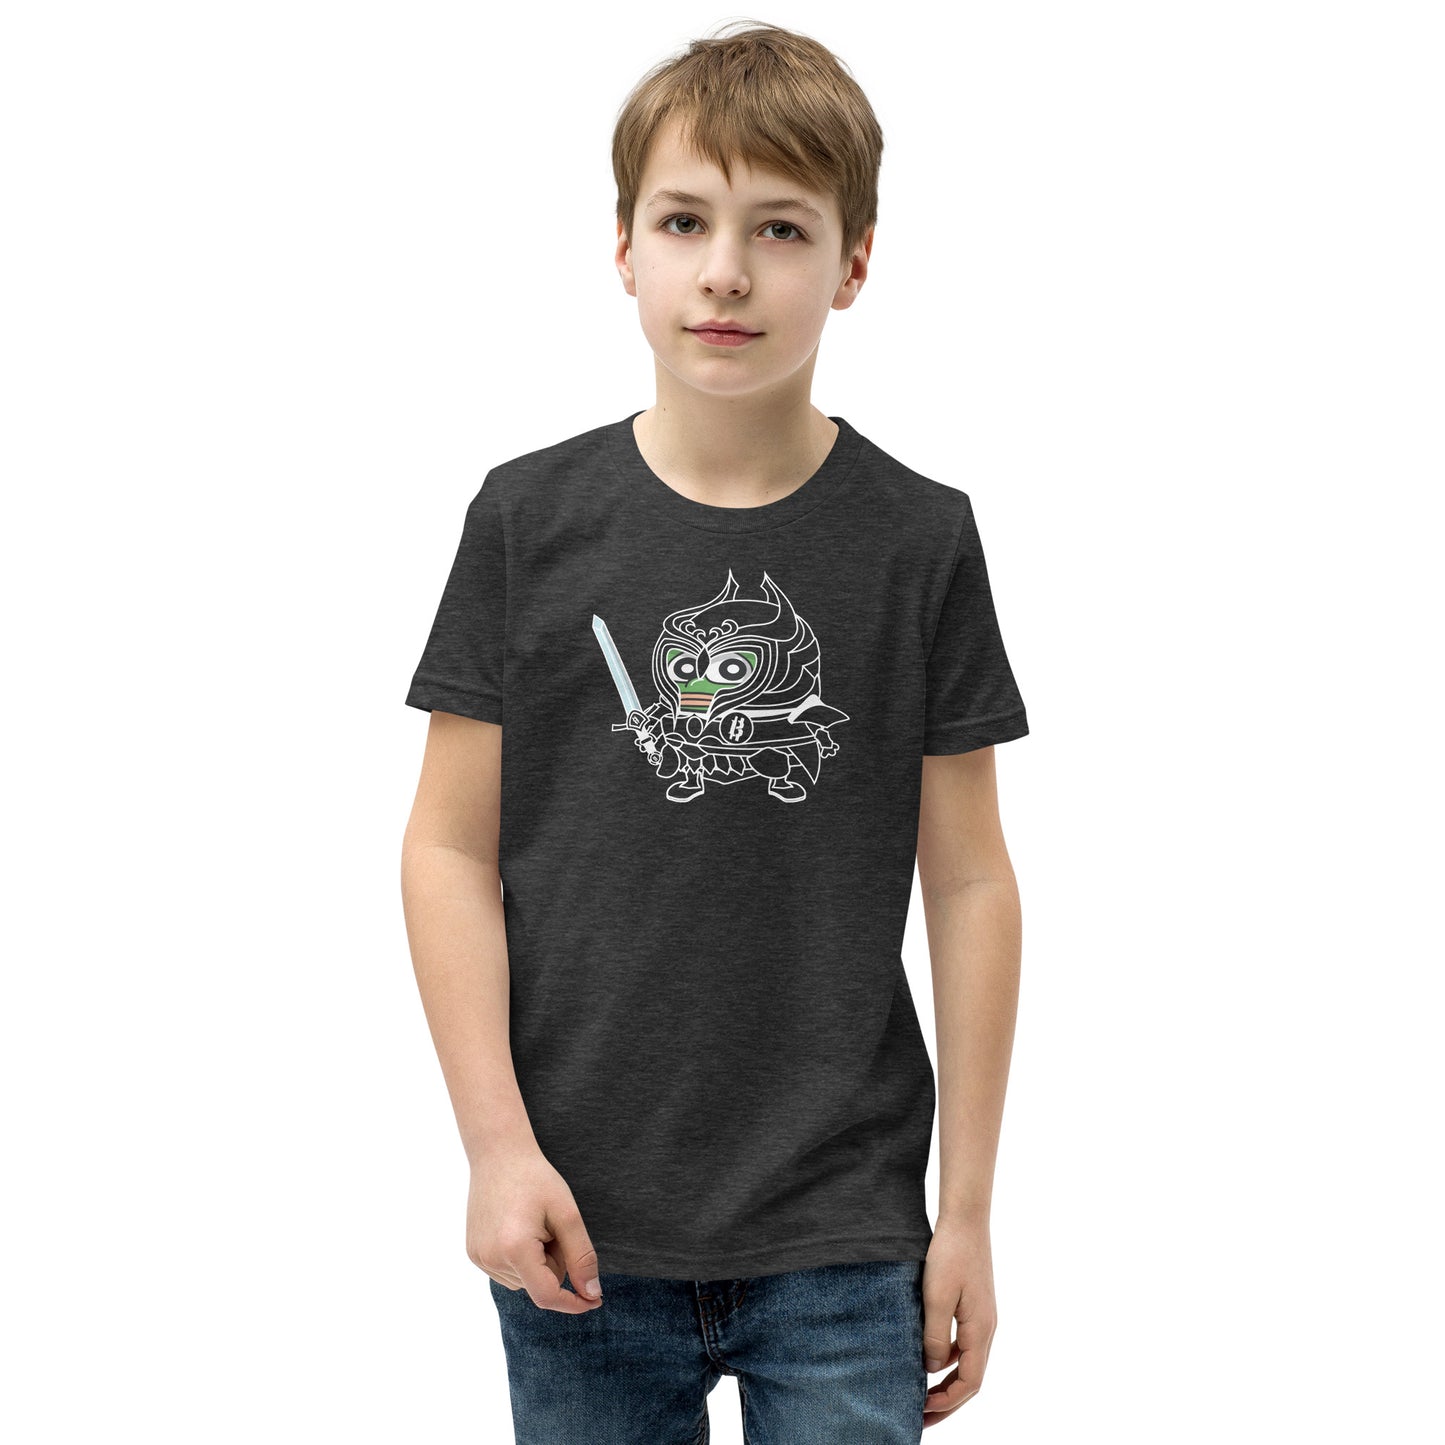 Bitcoiner in Training Kids Tshirt